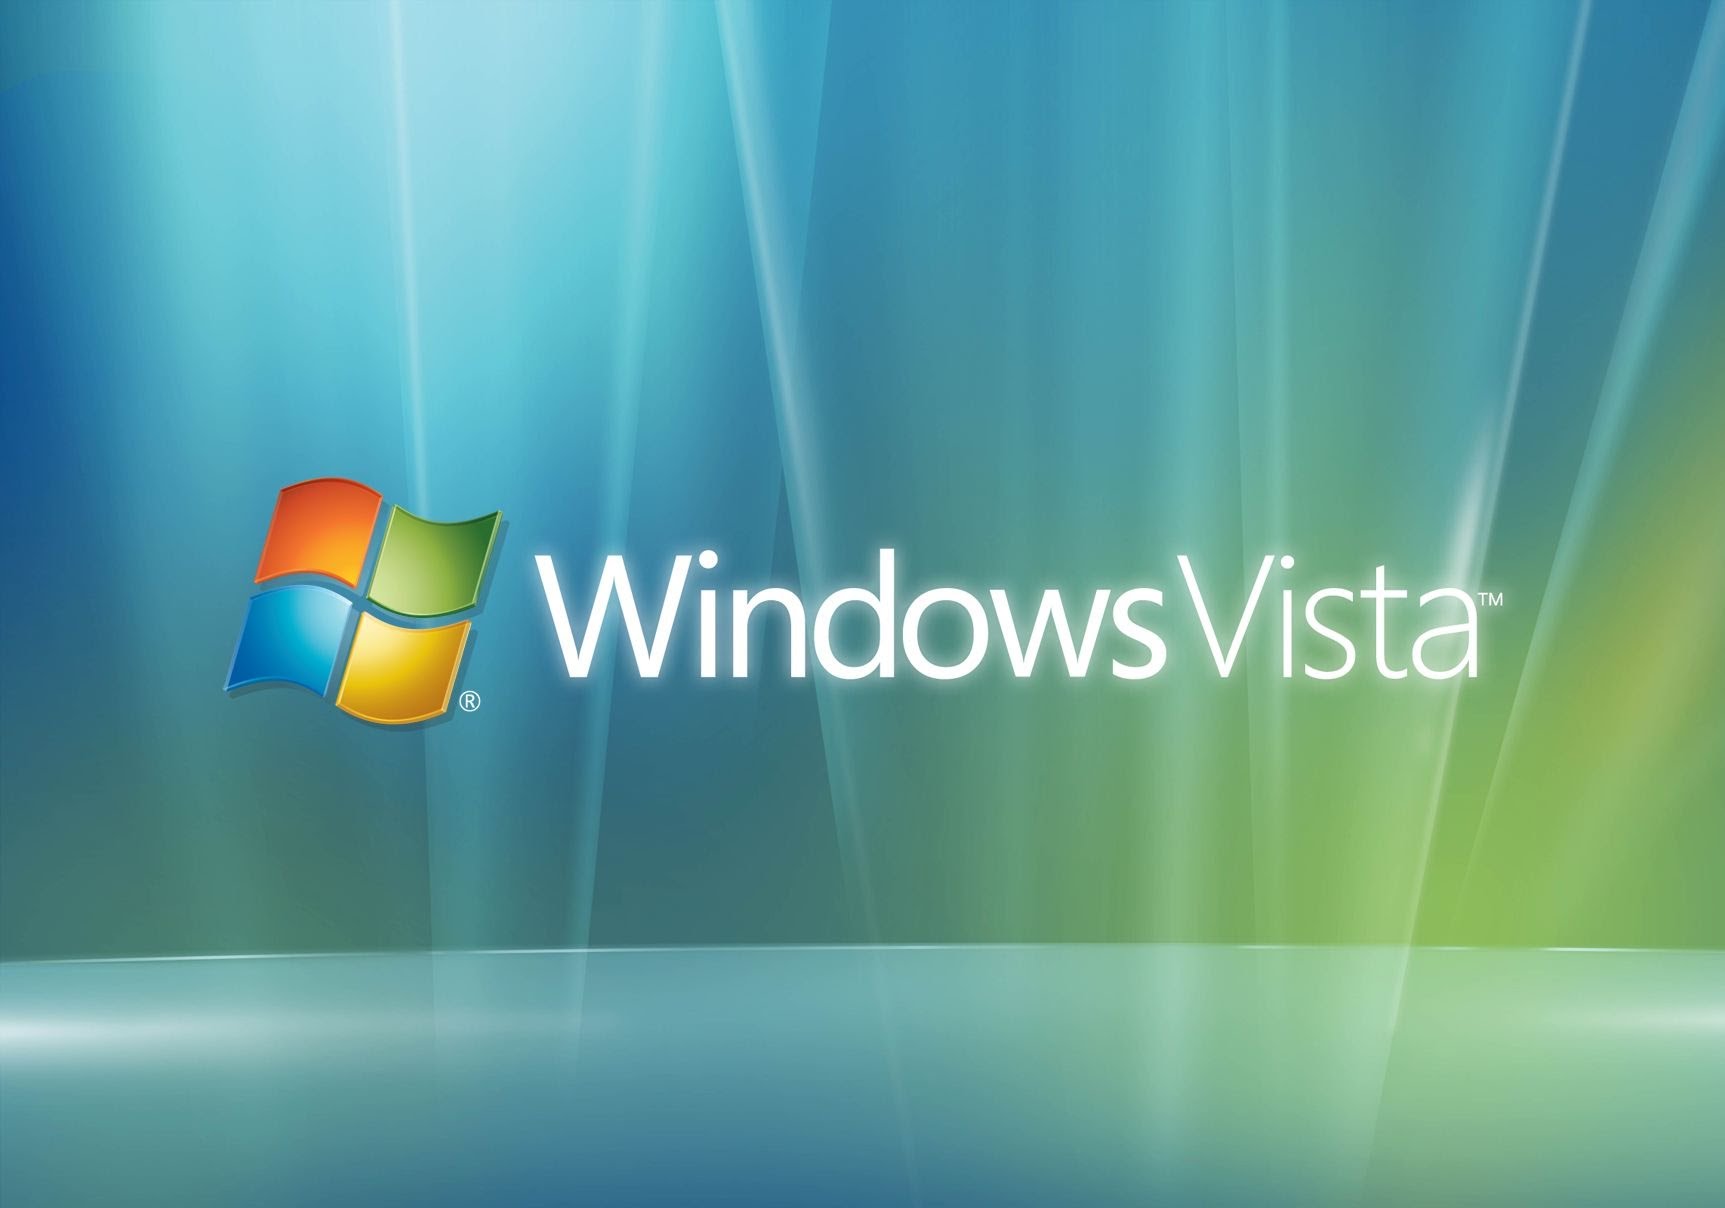 Одним из главных достоинств вышедшей в 2006 году операционной системы Windows Vista, по замыслу Microsoft, должна была стать боковая панель sidebar